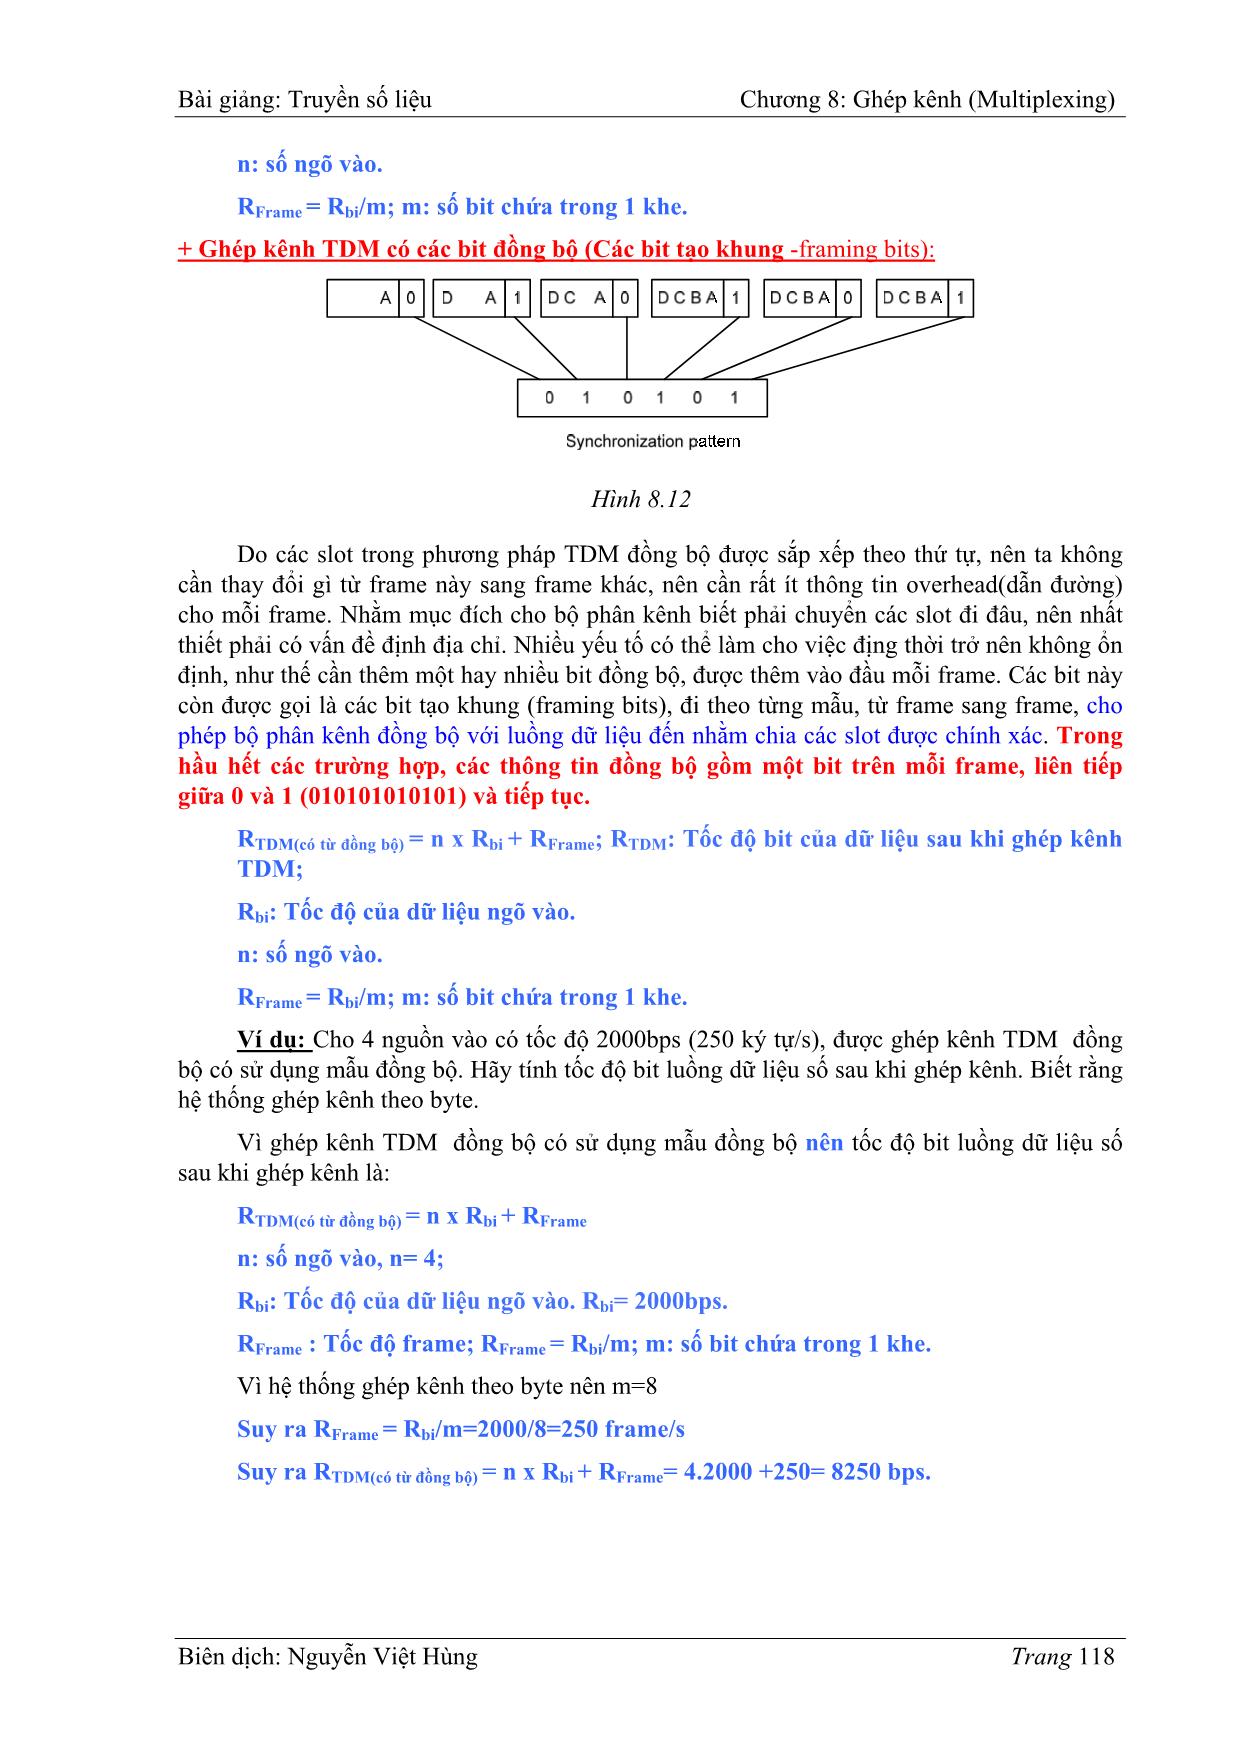 Bài giảng Truyền số liệu - Chương 8: Ghép kênh (Multiplexing) - Nguyễn Việt Hùng trang 6